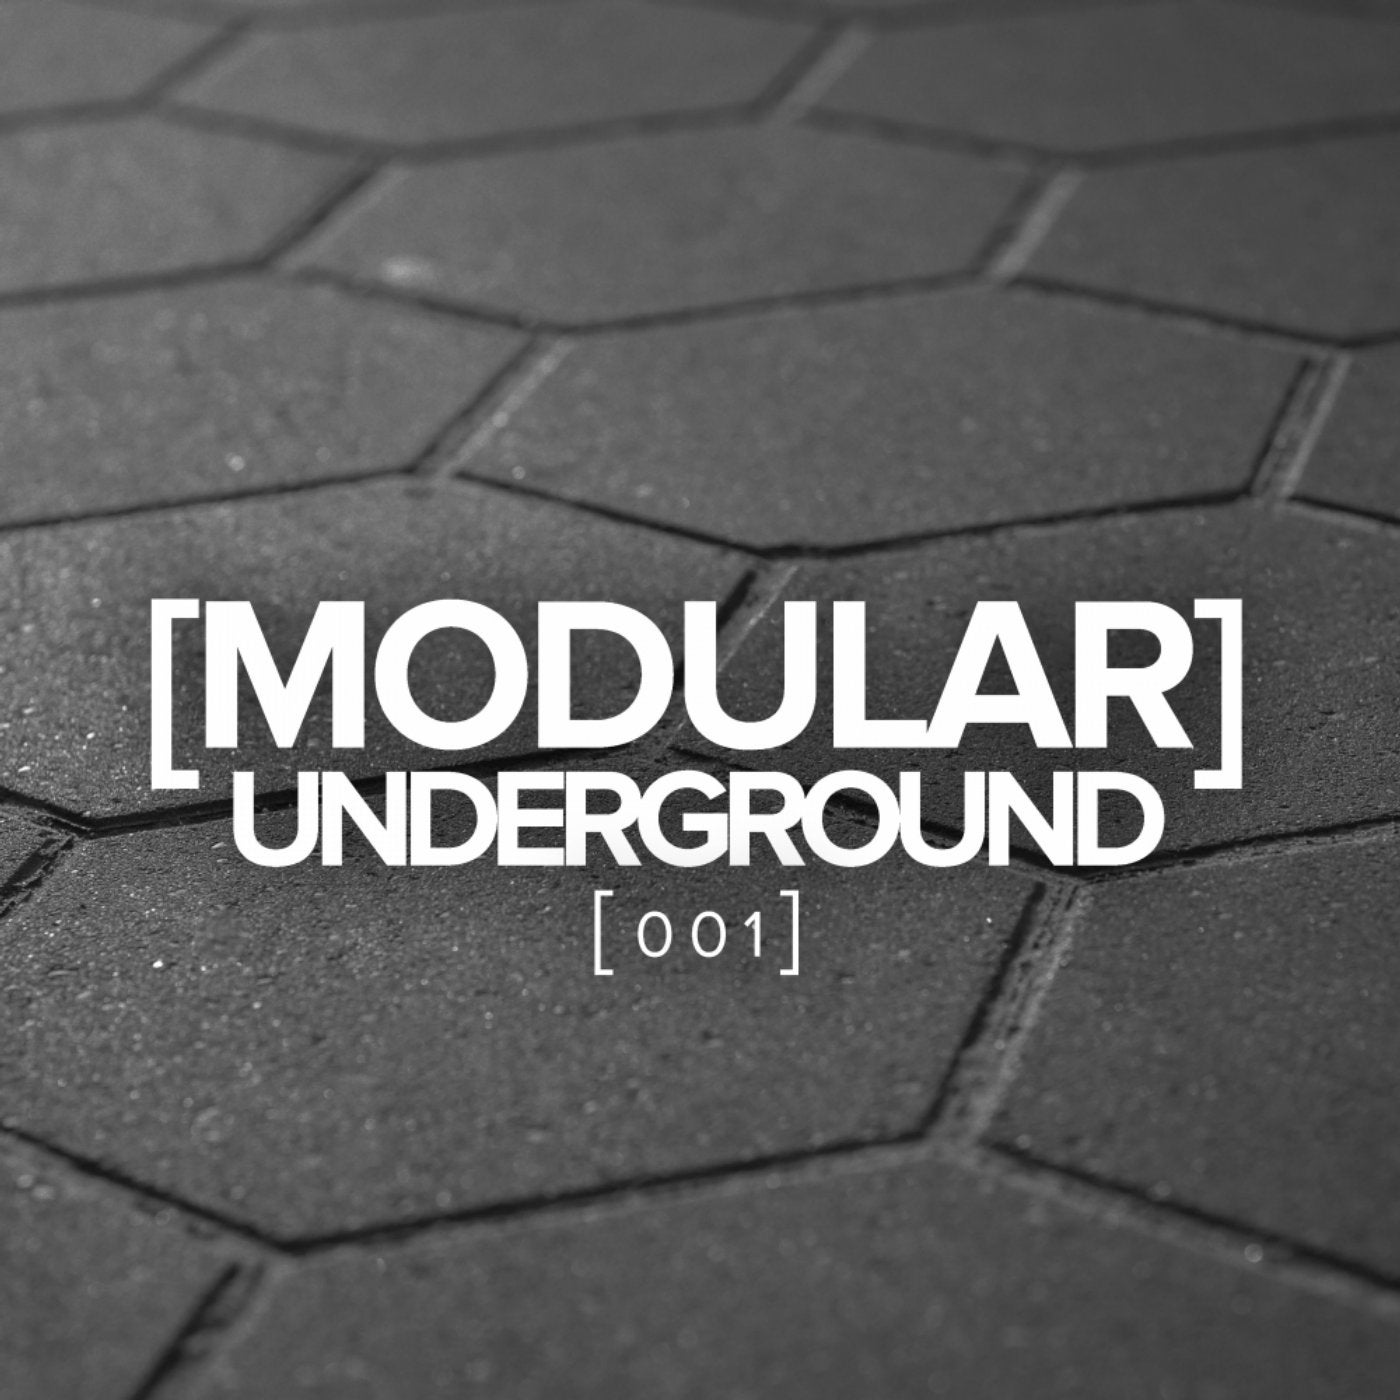 Modular Underground, 001